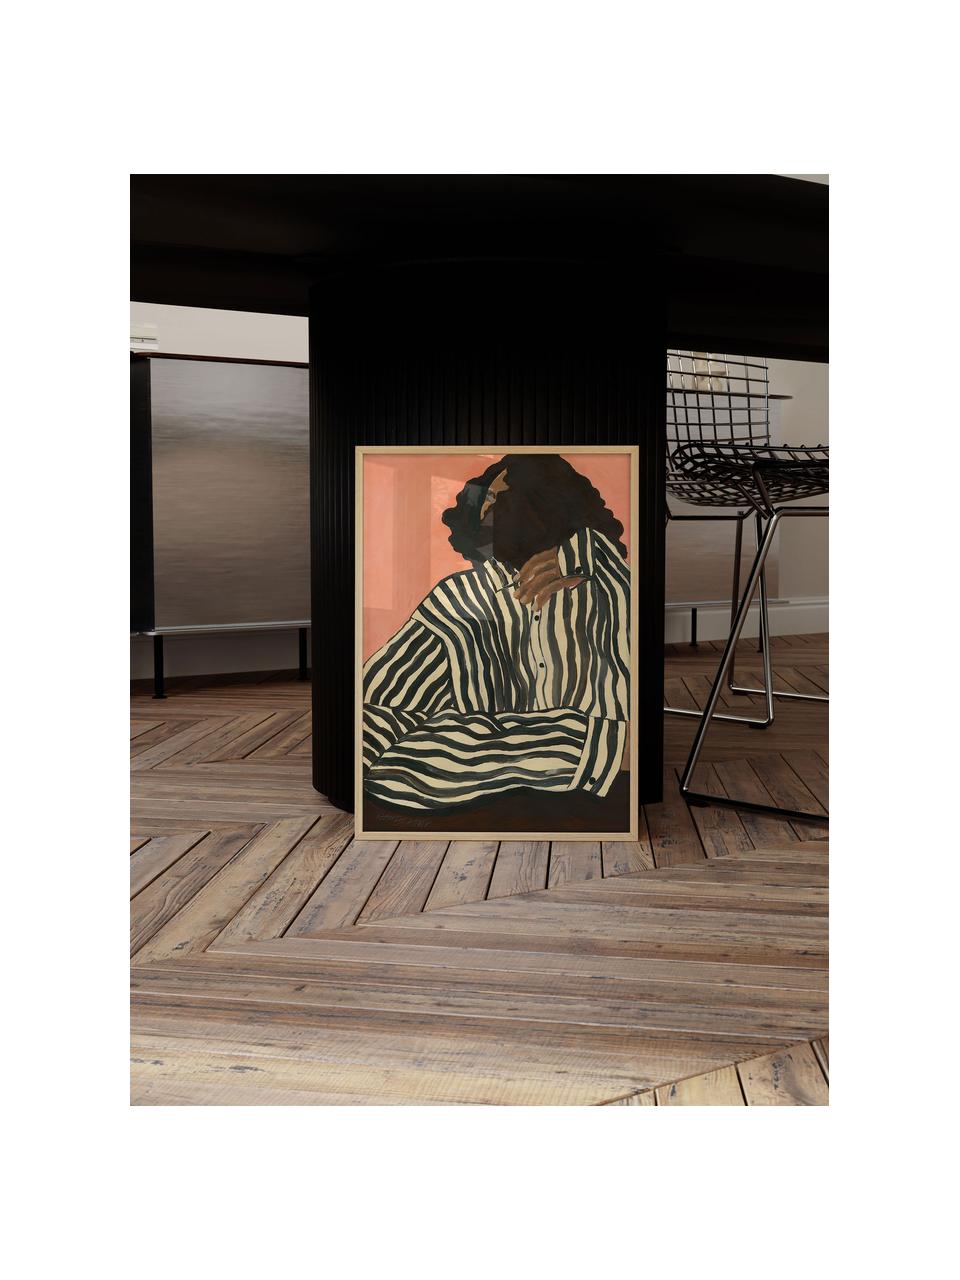 Plakát Serene Stripes by Hanna Peterson x The Poster Club, Korálově červená, černá, více barev, Š 50 cm, V 70 cm